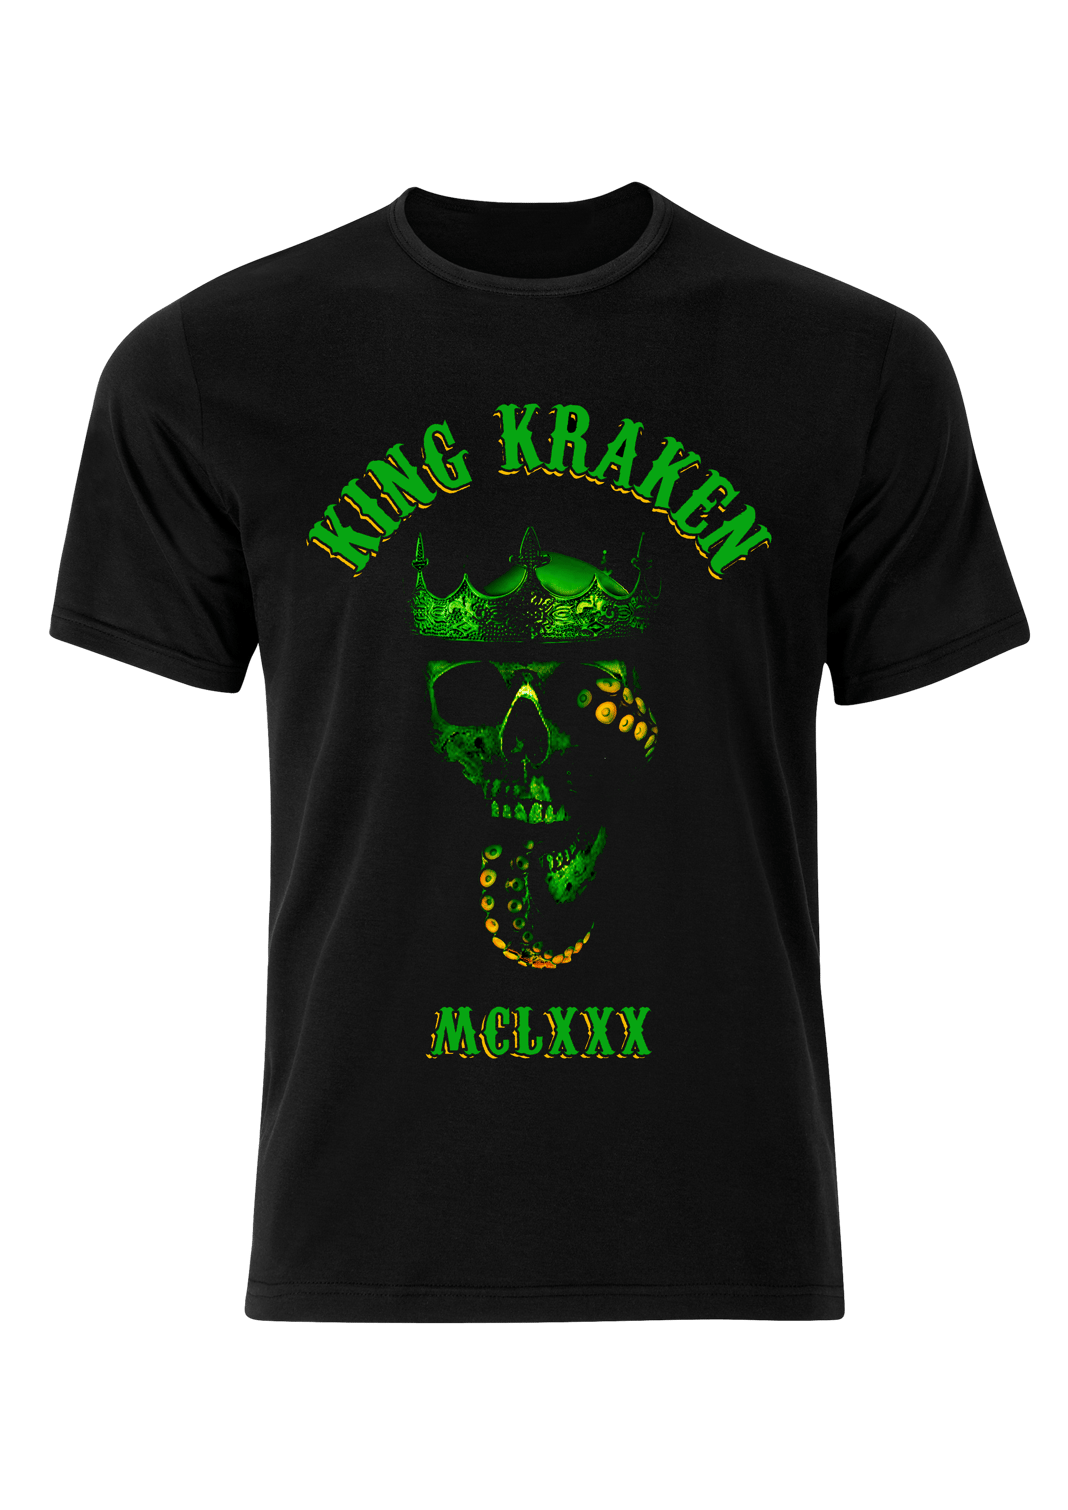 Seattle kraken merch store shirt - Kingteeshop